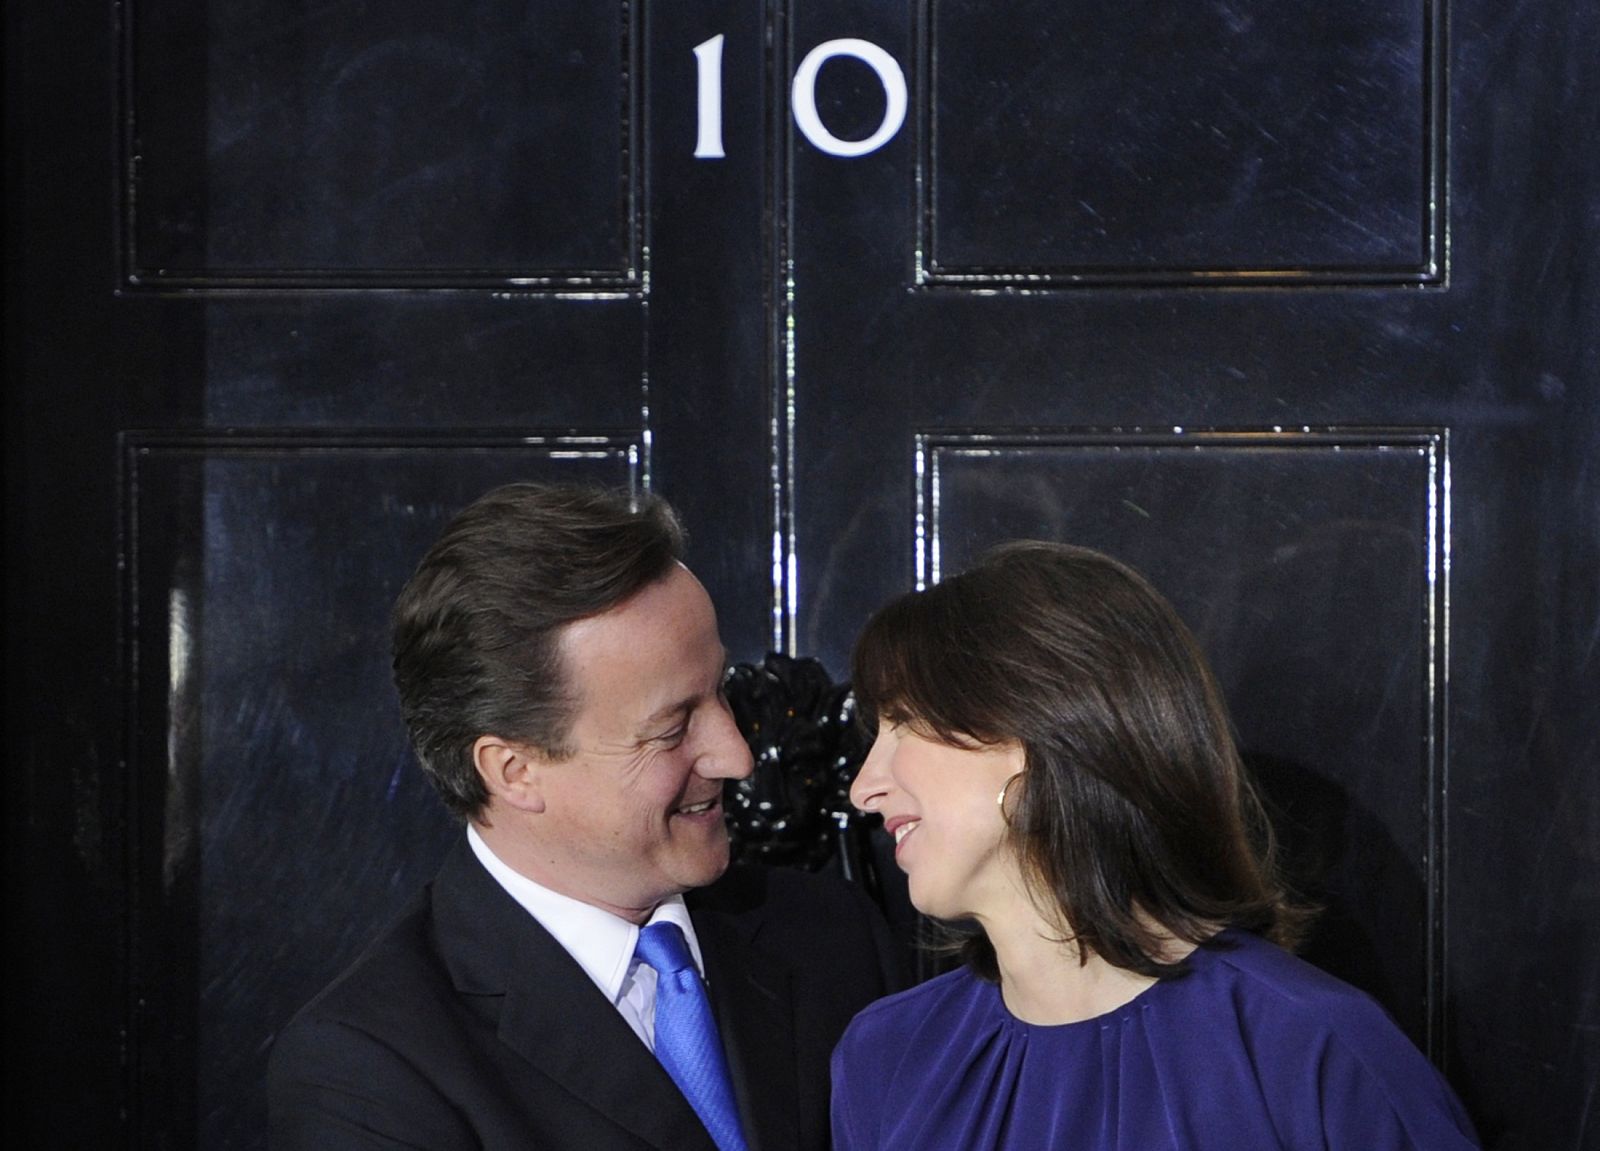 El primer ministro británico, David Cameron, abrazó cariñosamente a su mujer Samantha antes de entrar en su nueva residencia de Downing Street.